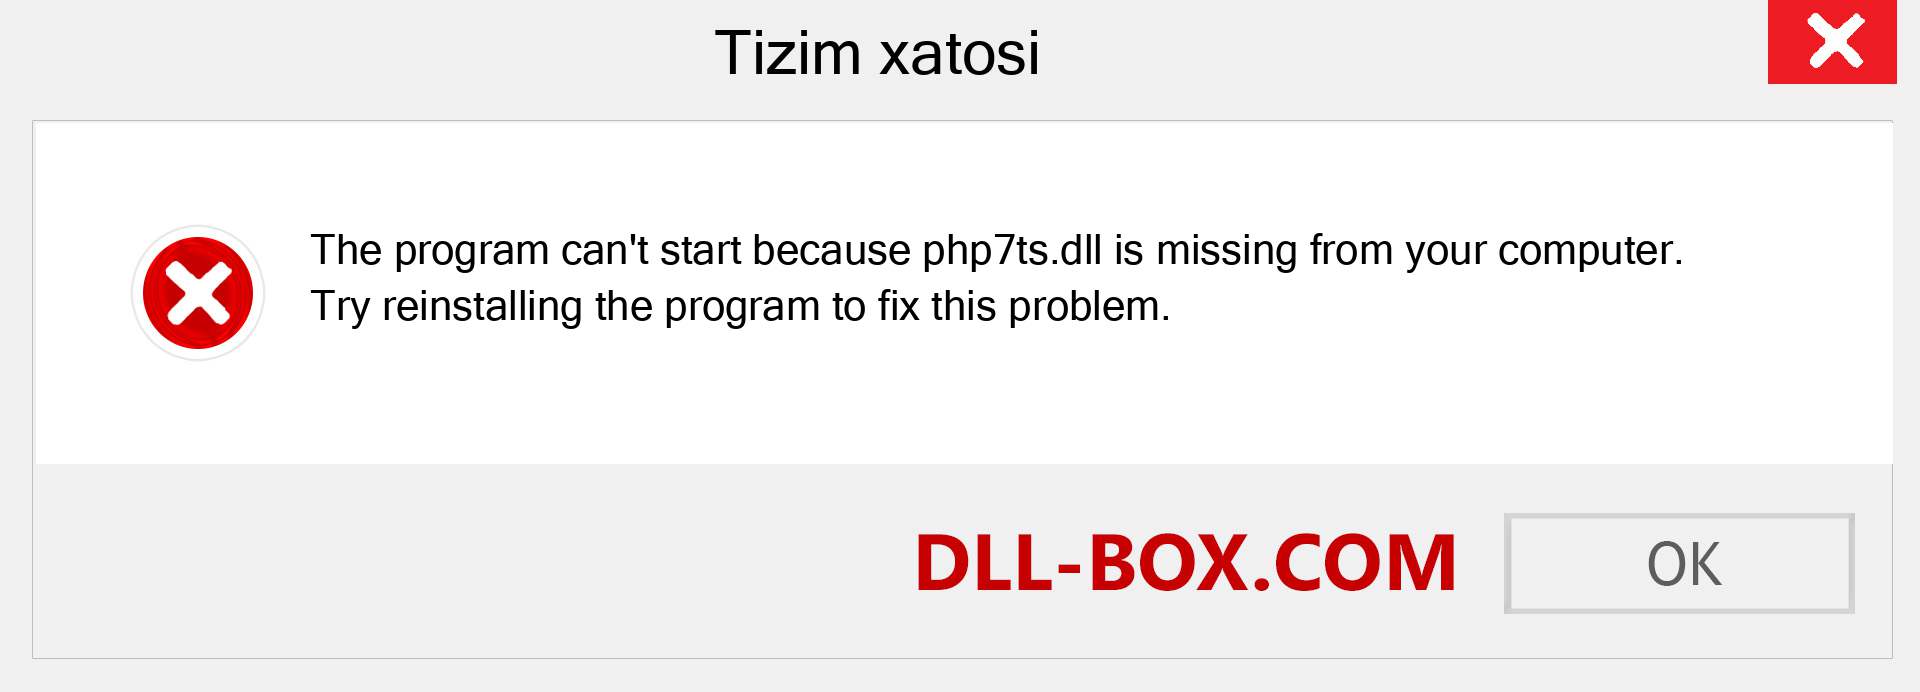 php7ts.dll fayli yo'qolganmi?. Windows 7, 8, 10 uchun yuklab olish - Windowsda php7ts dll etishmayotgan xatoni tuzating, rasmlar, rasmlar